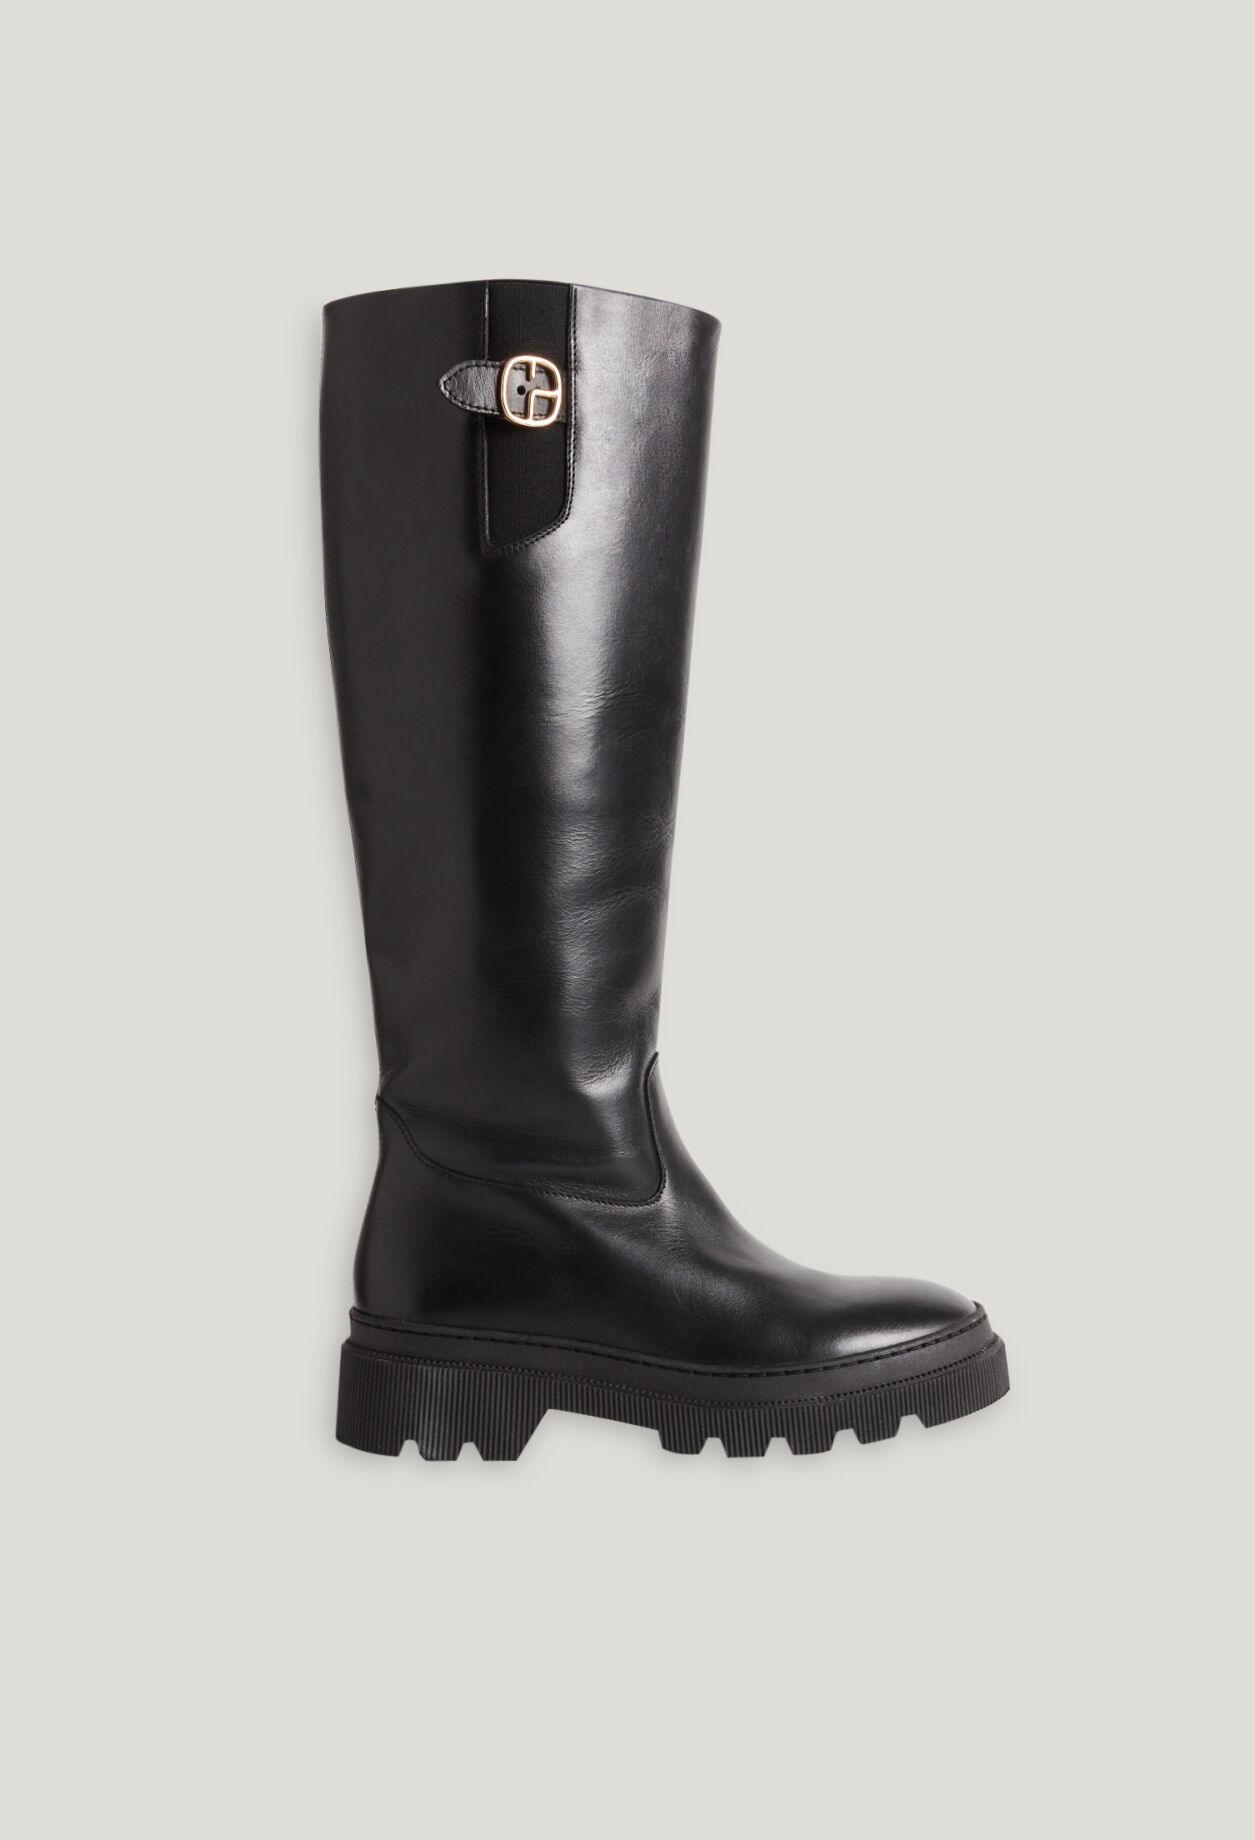 Black plain leather boots